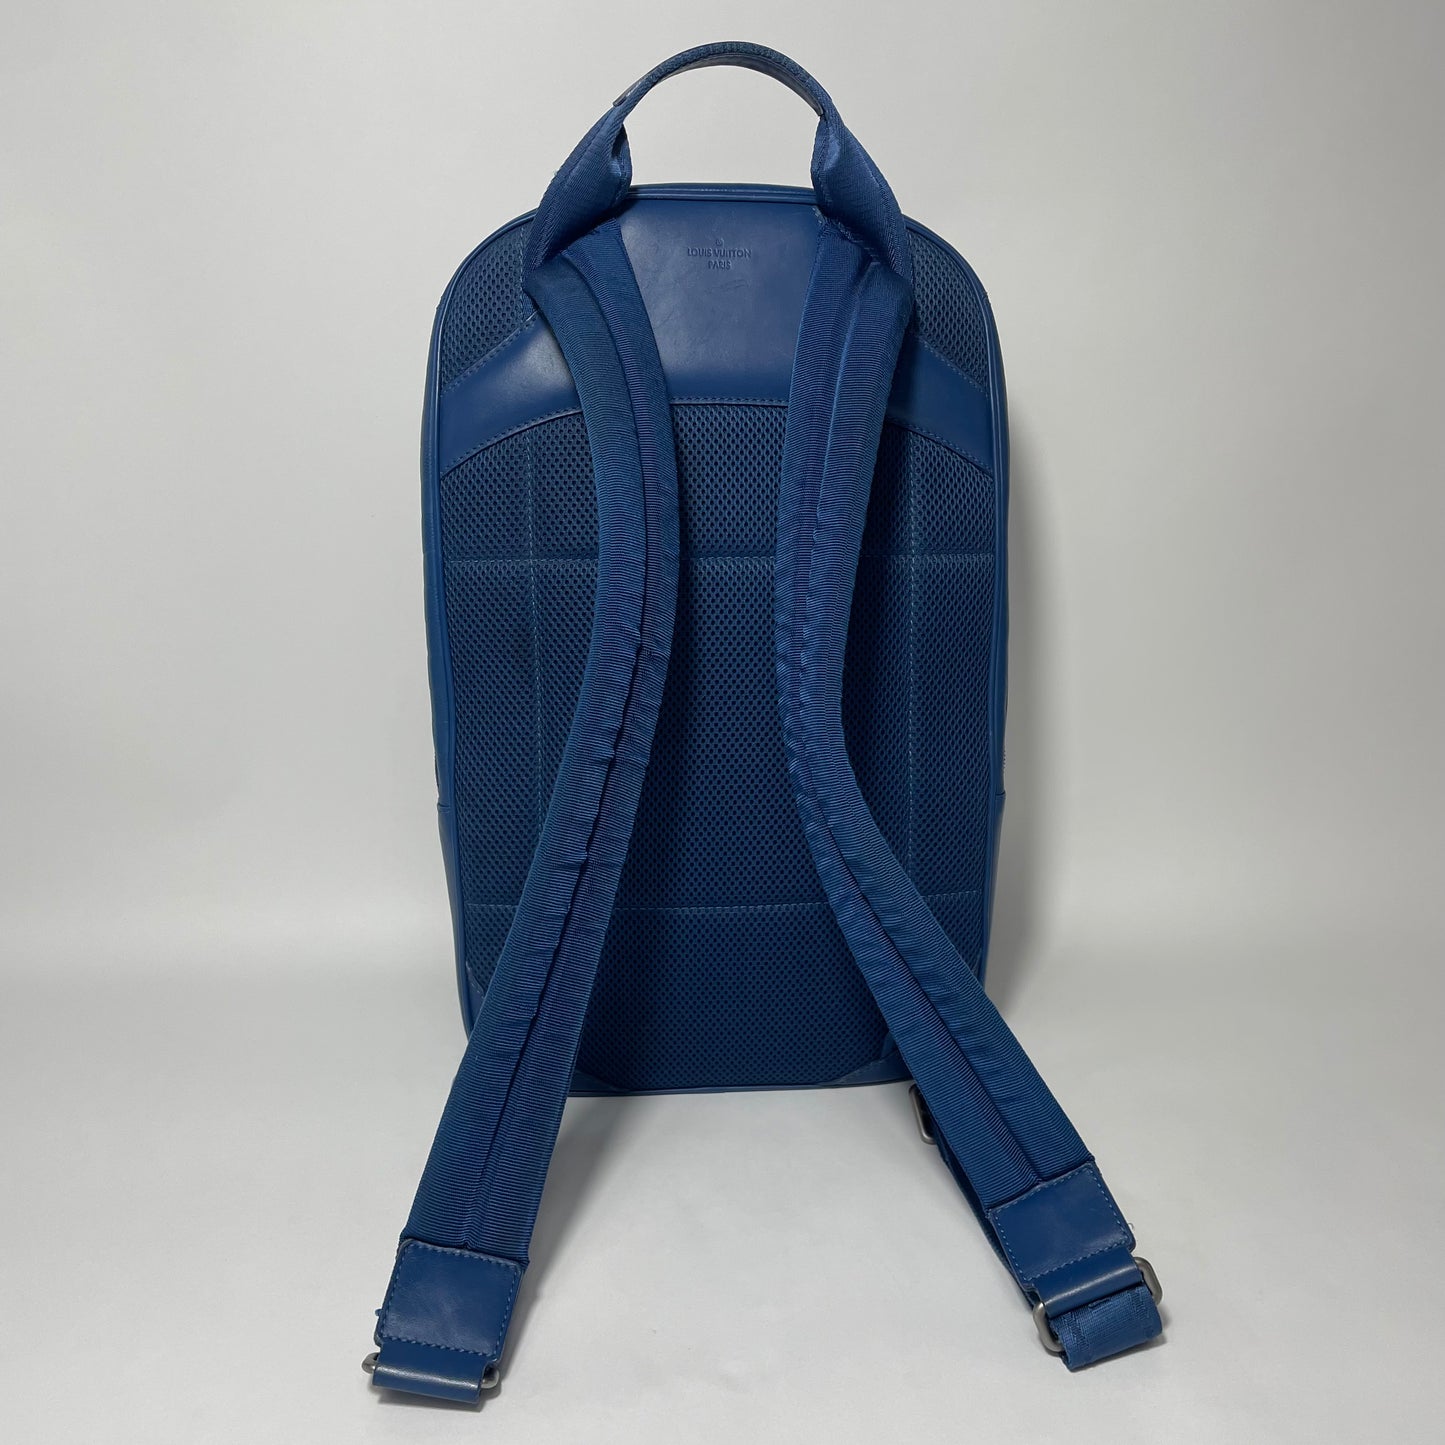 Louis Vuitton Michale Backpack Blue